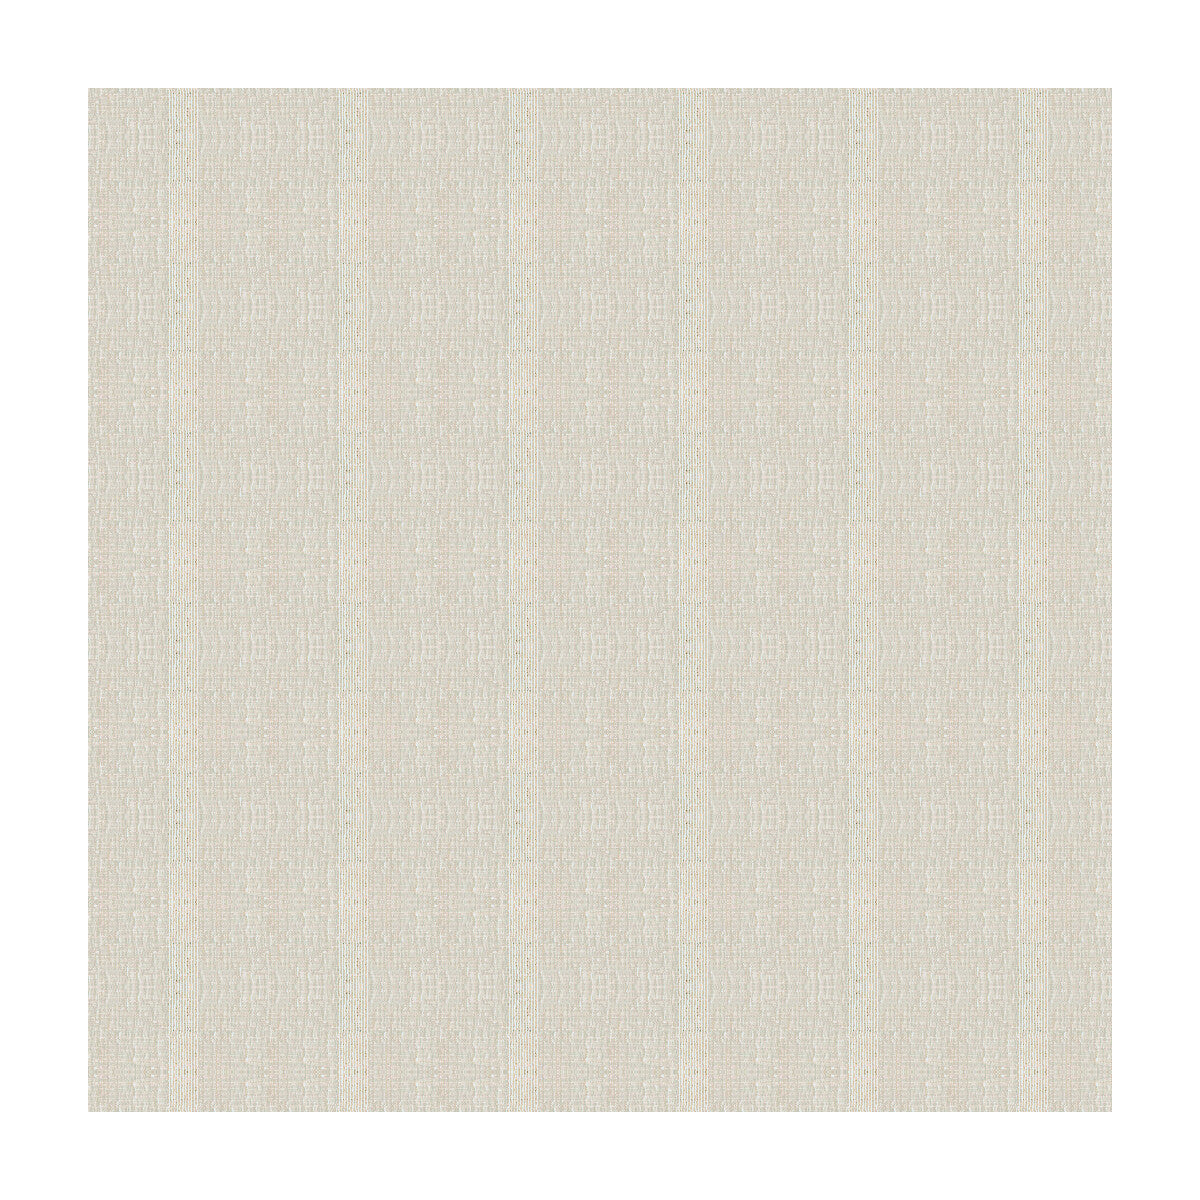 Kravet Basics fabric in 4115-111 color - pattern 4115.111.0 - by Kravet Basics